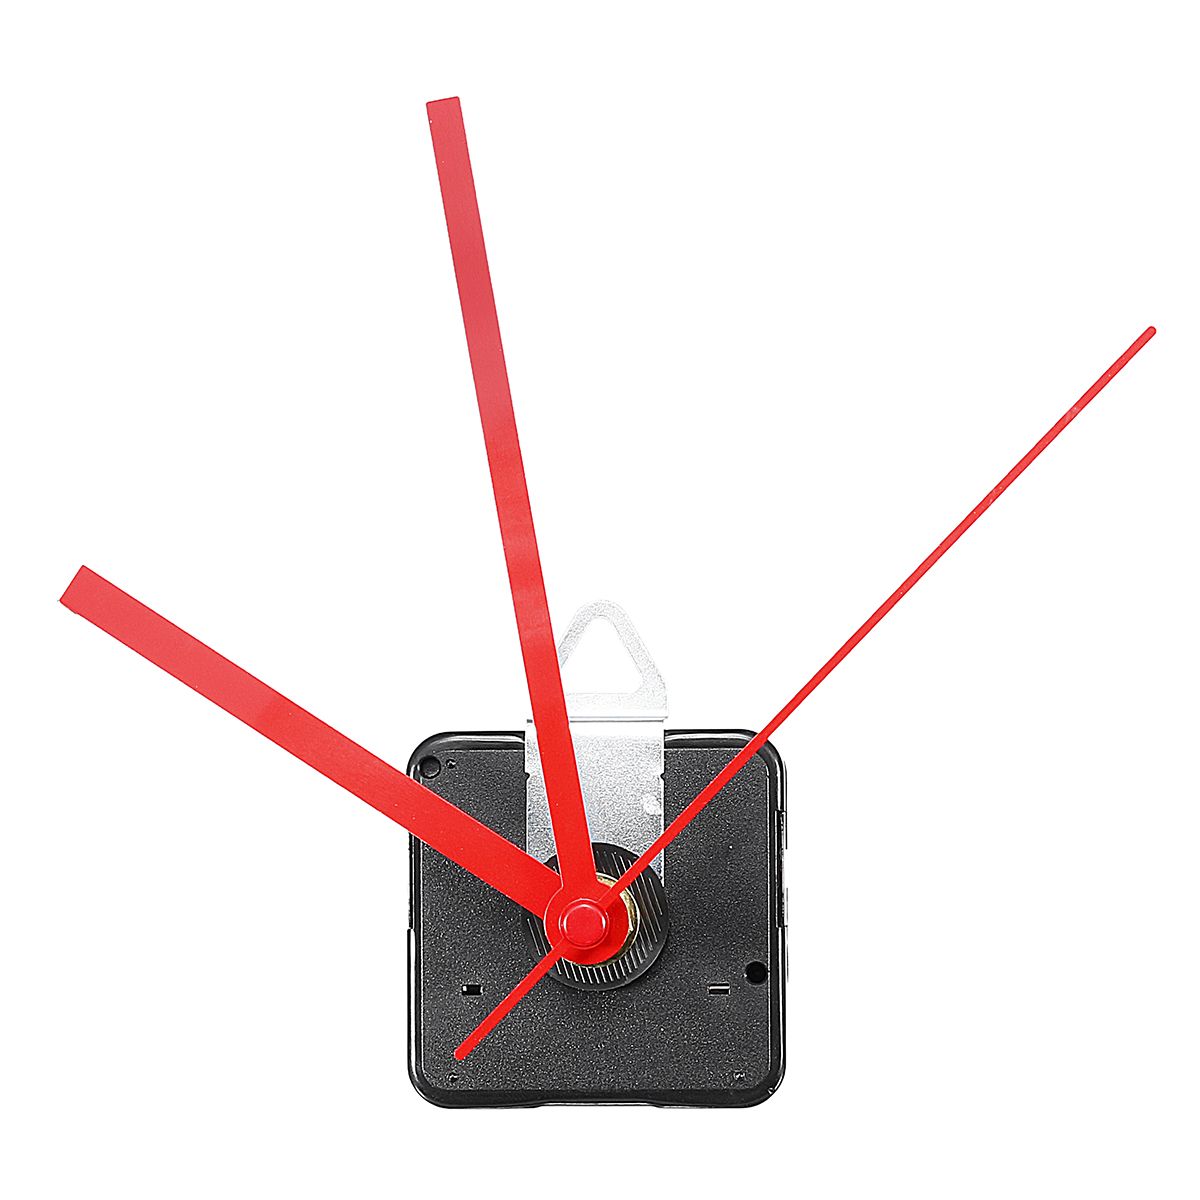 20mm-Quartz-Silent-Clock-Movement-Mechanism-Module-DIY-Kit-Hour-Minute-Second-Without-Battery-1331013